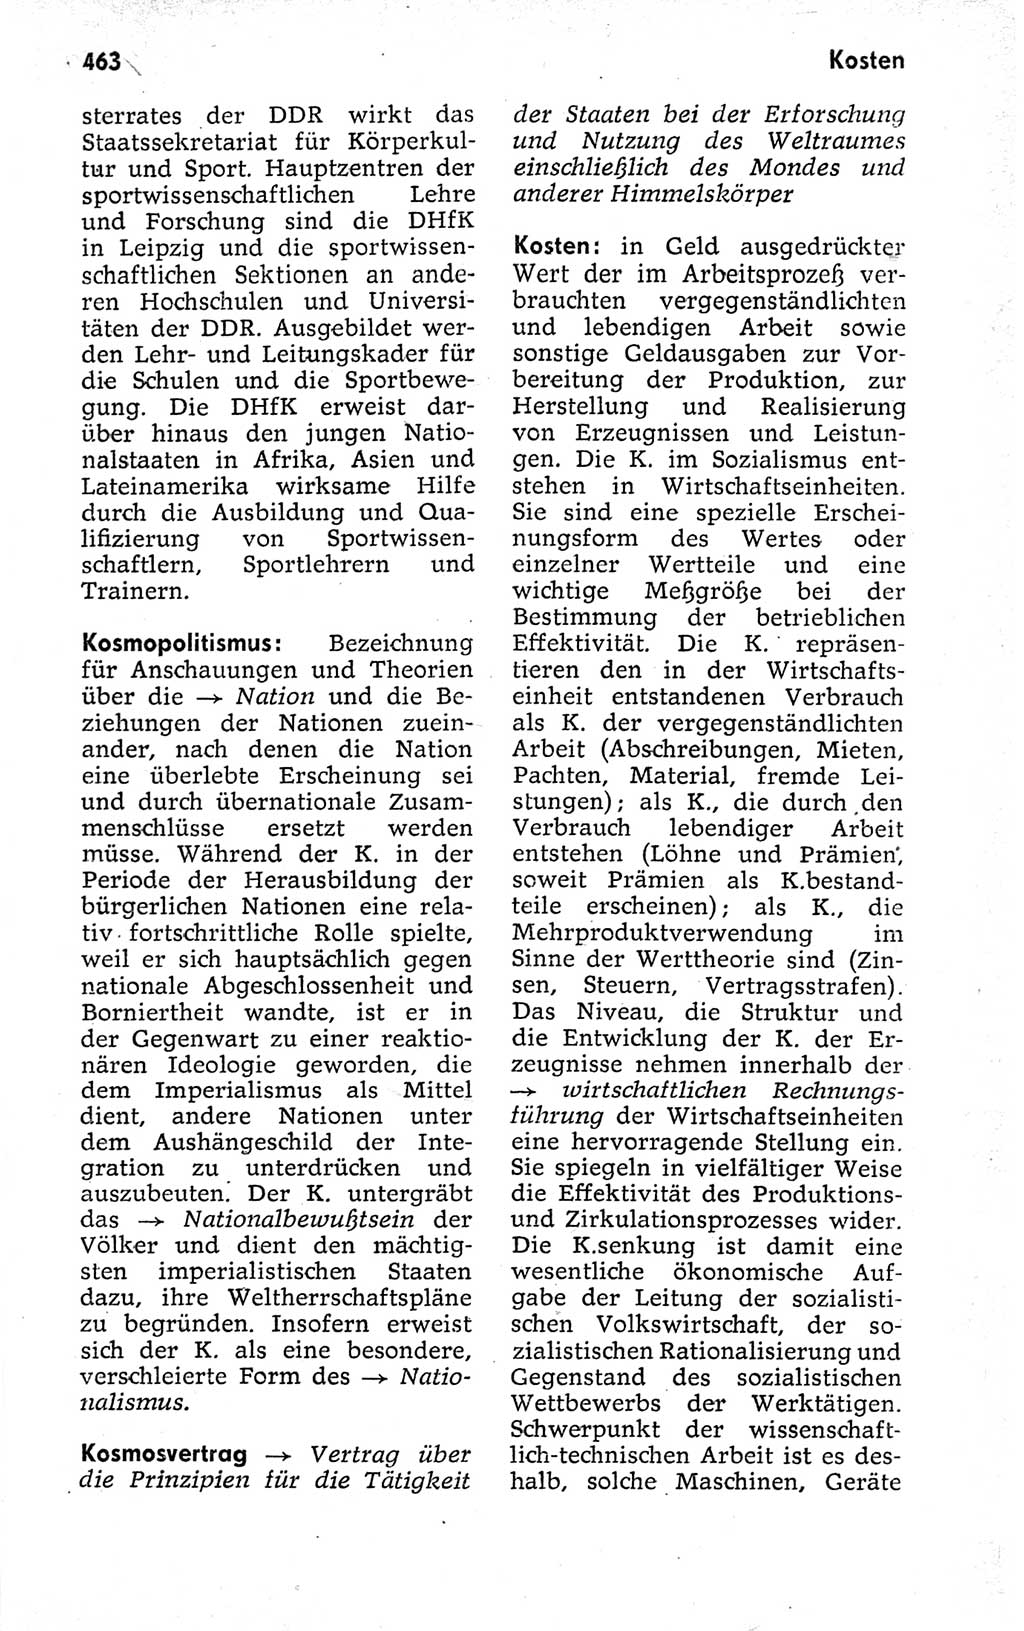 Kleines politisches Wörterbuch [Deutsche Demokratische Republik (DDR)] 1973, Seite 463 (Kl. pol. Wb. DDR 1973, S. 463)